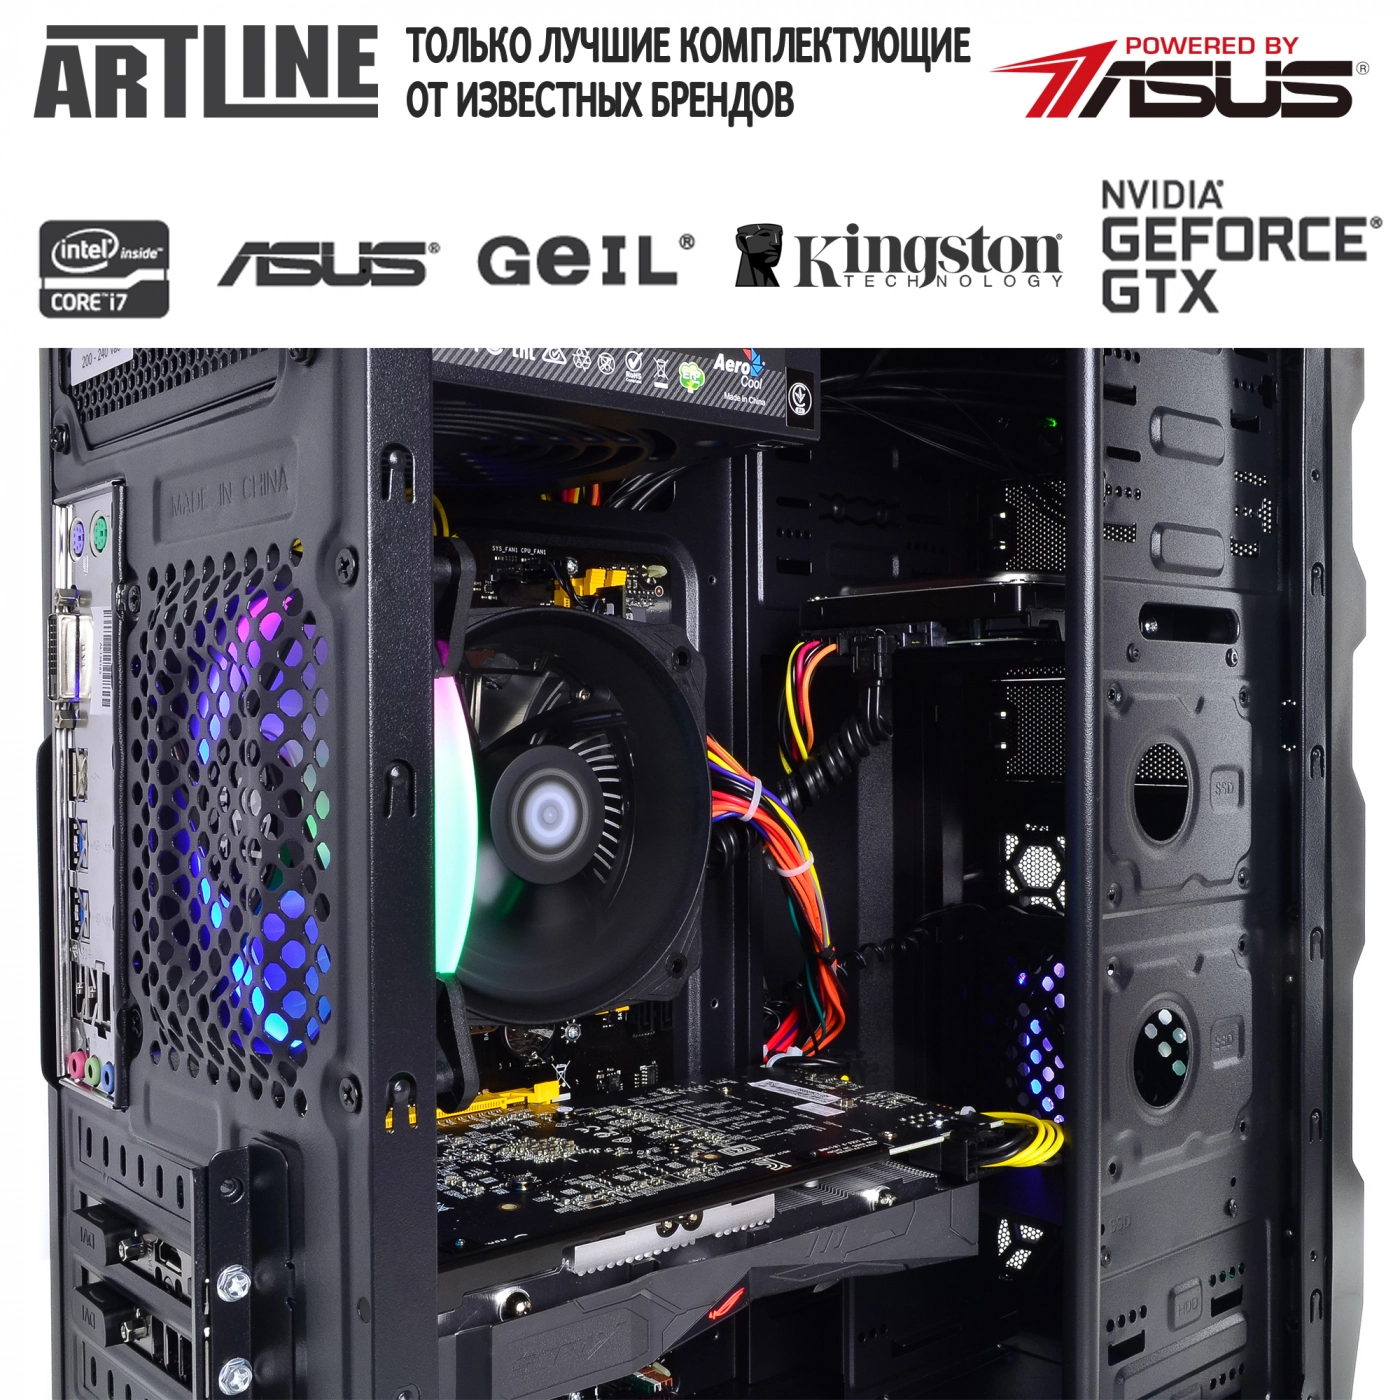 Купить Компьютер ARTLINE Gaming X46v29 - фото 6